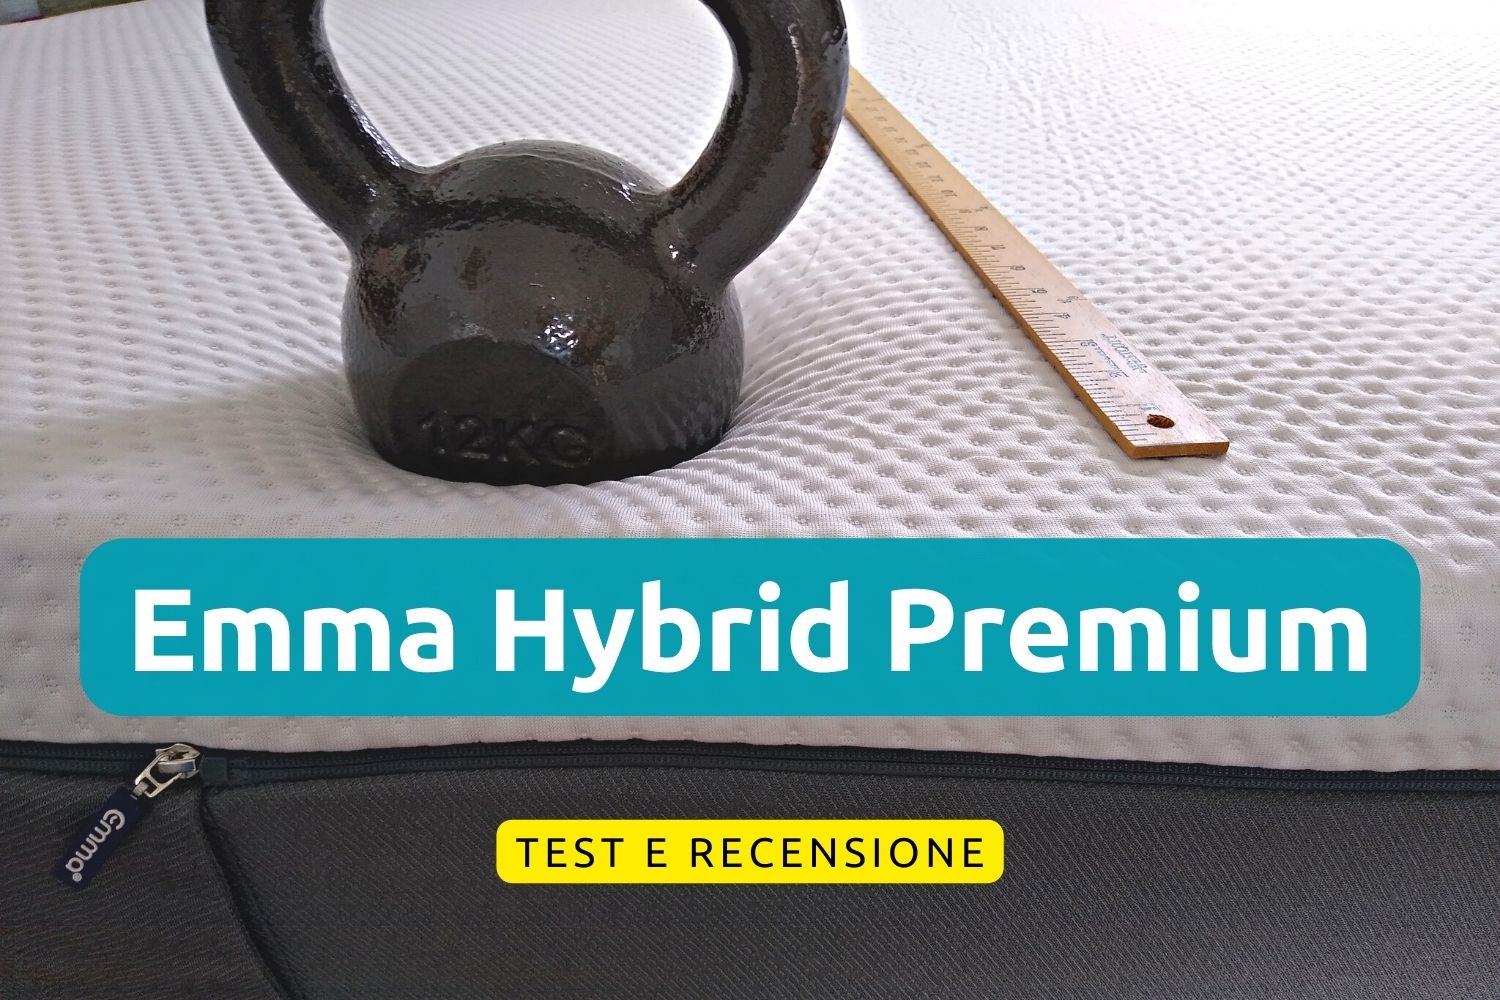 Materasso Emma Hybrid Premium, test e recensione